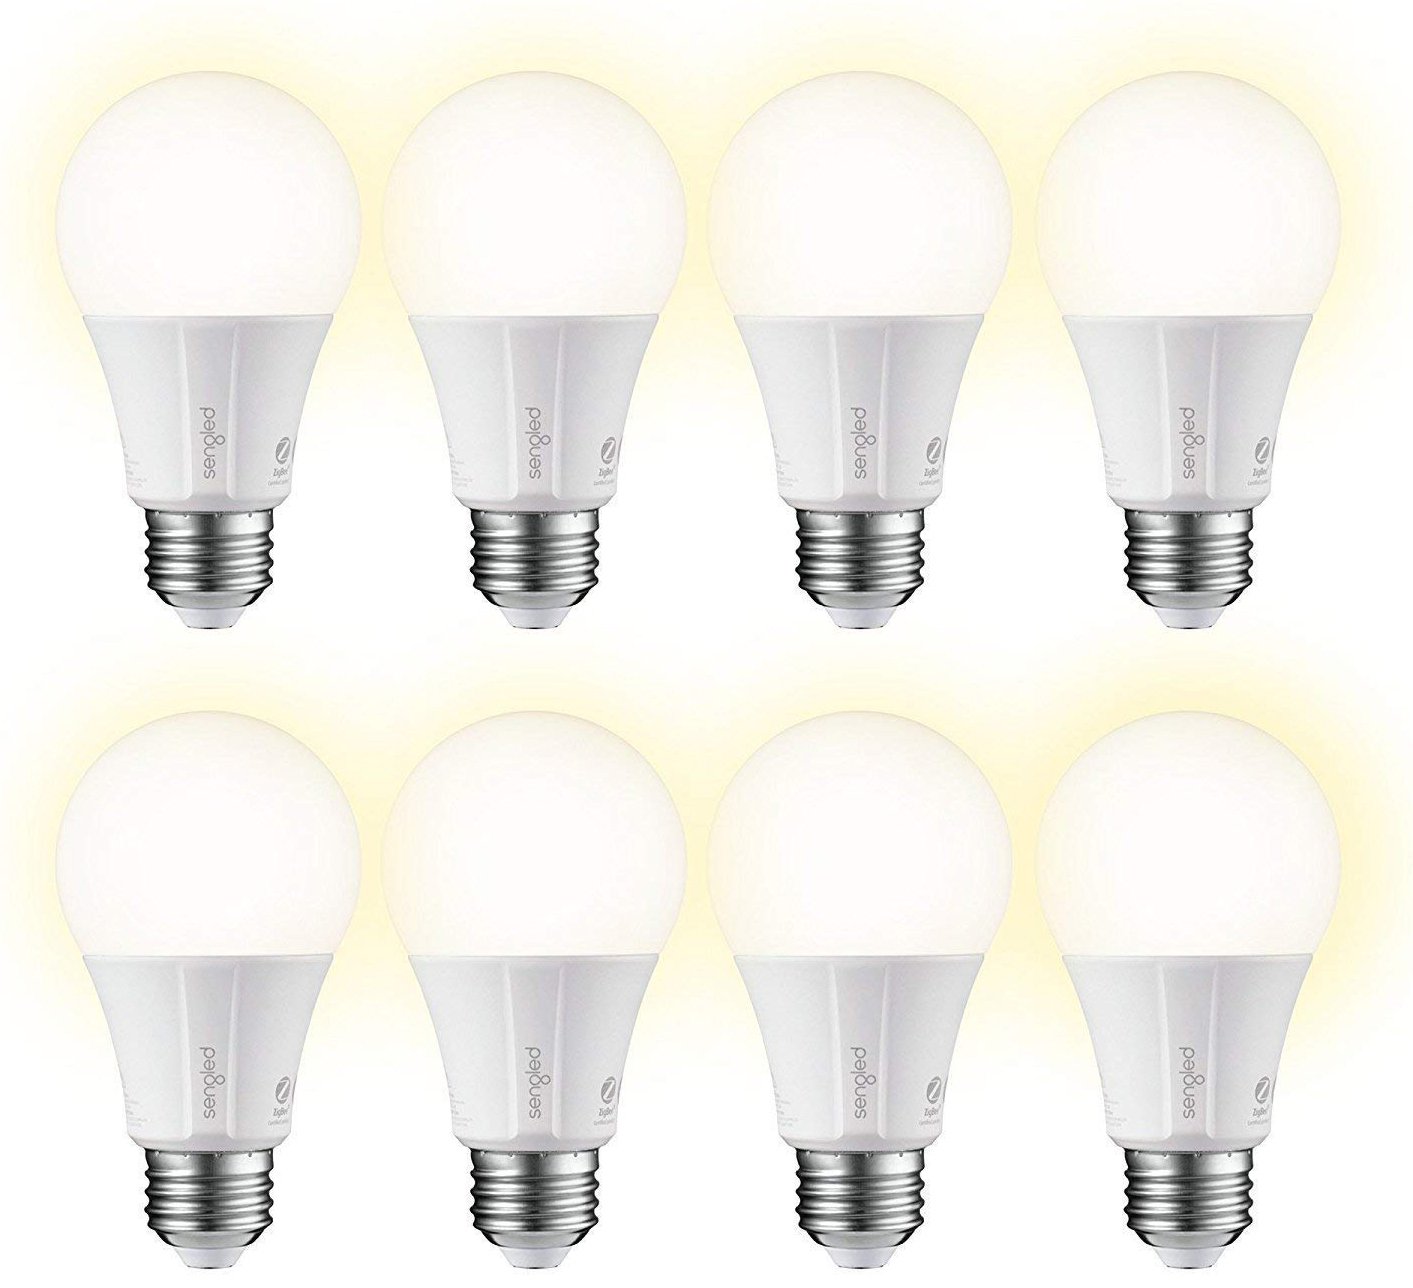 sengled-smart-led-bulbs-8-pack-press.jpg